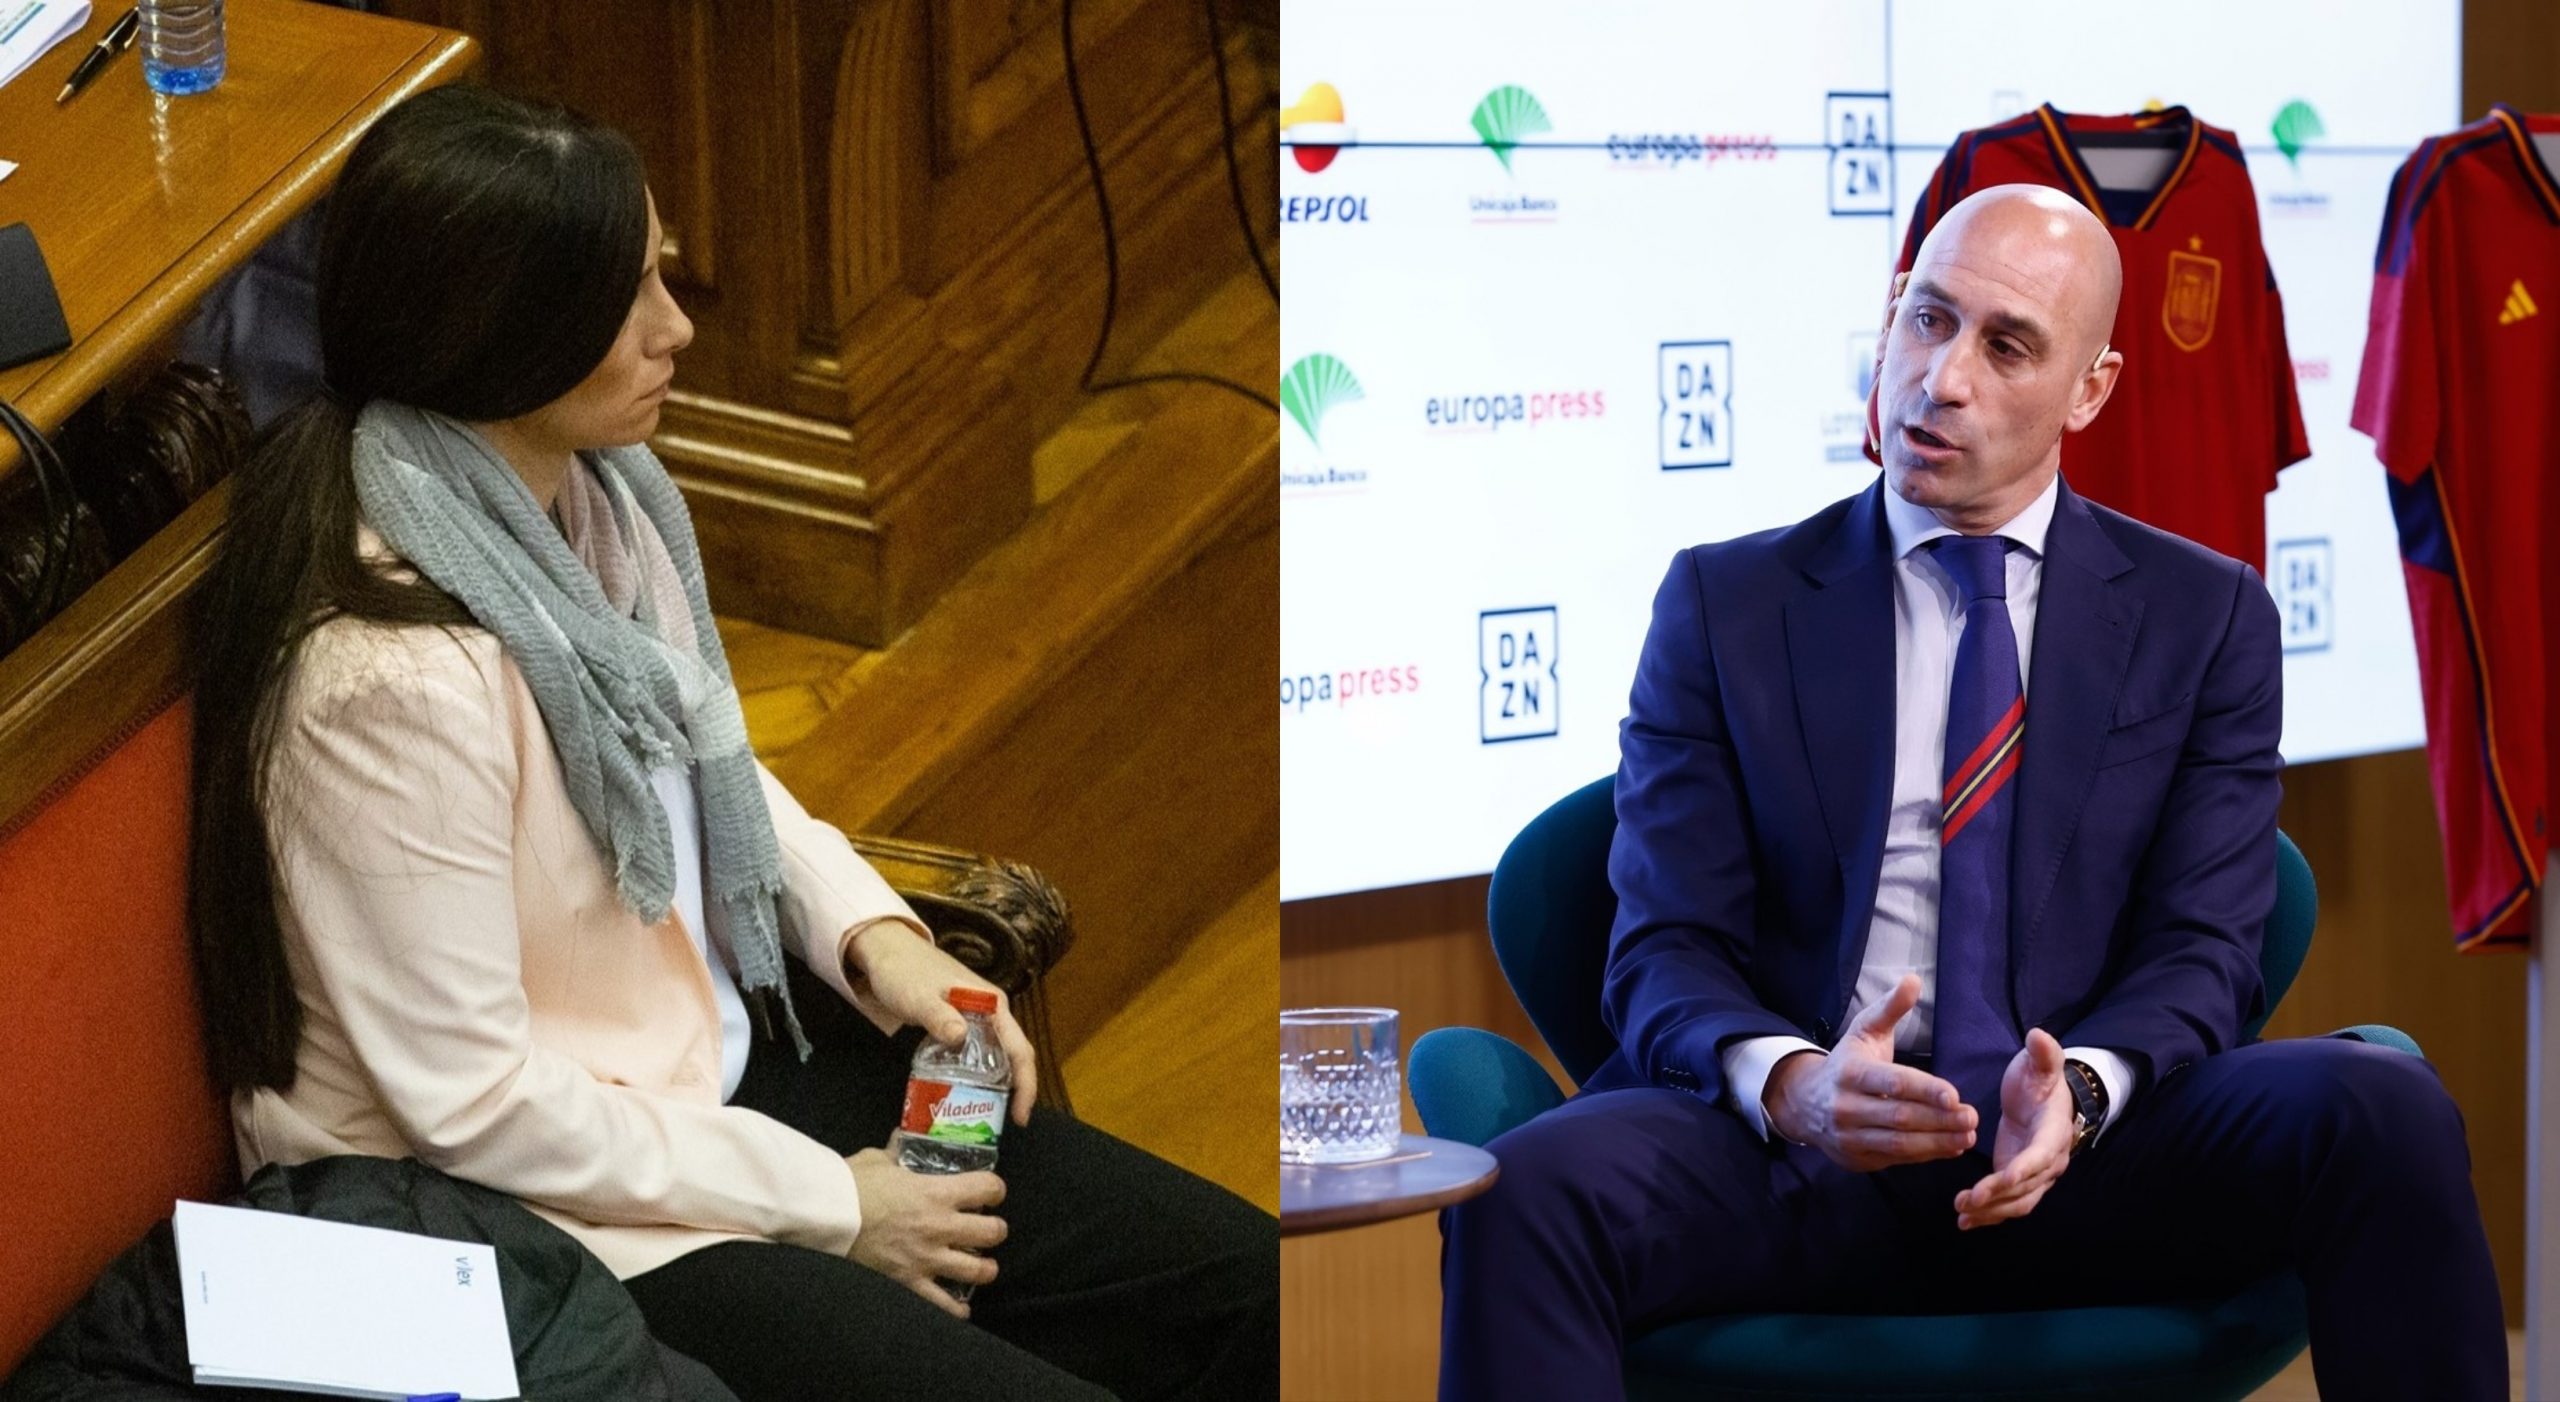 A la izquierda Rosa Peral en el banquillo en el juicio de 2020. A la derecha Luis Rubiales en un desayuno deportivo de Europa Press. - (izq) DAVID ZORRAQUINO / Europa Press